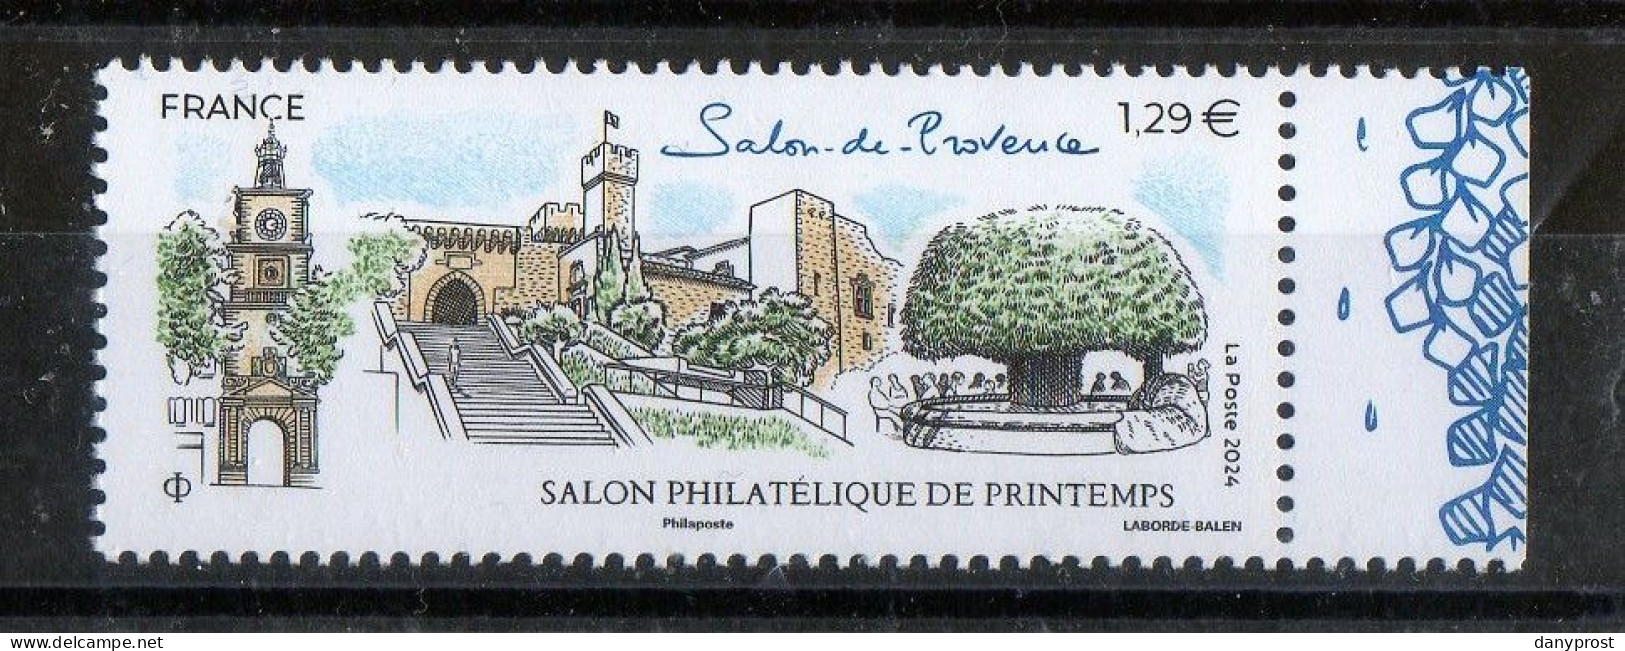 FR 2024 -" SALON PHILATELIQUE DE PRINTEMPS-Salon De Provence  " 1 T  LV 20g  à 1.29 € - 1 Marge Droit Illustrée - Neuf** - Nuovi